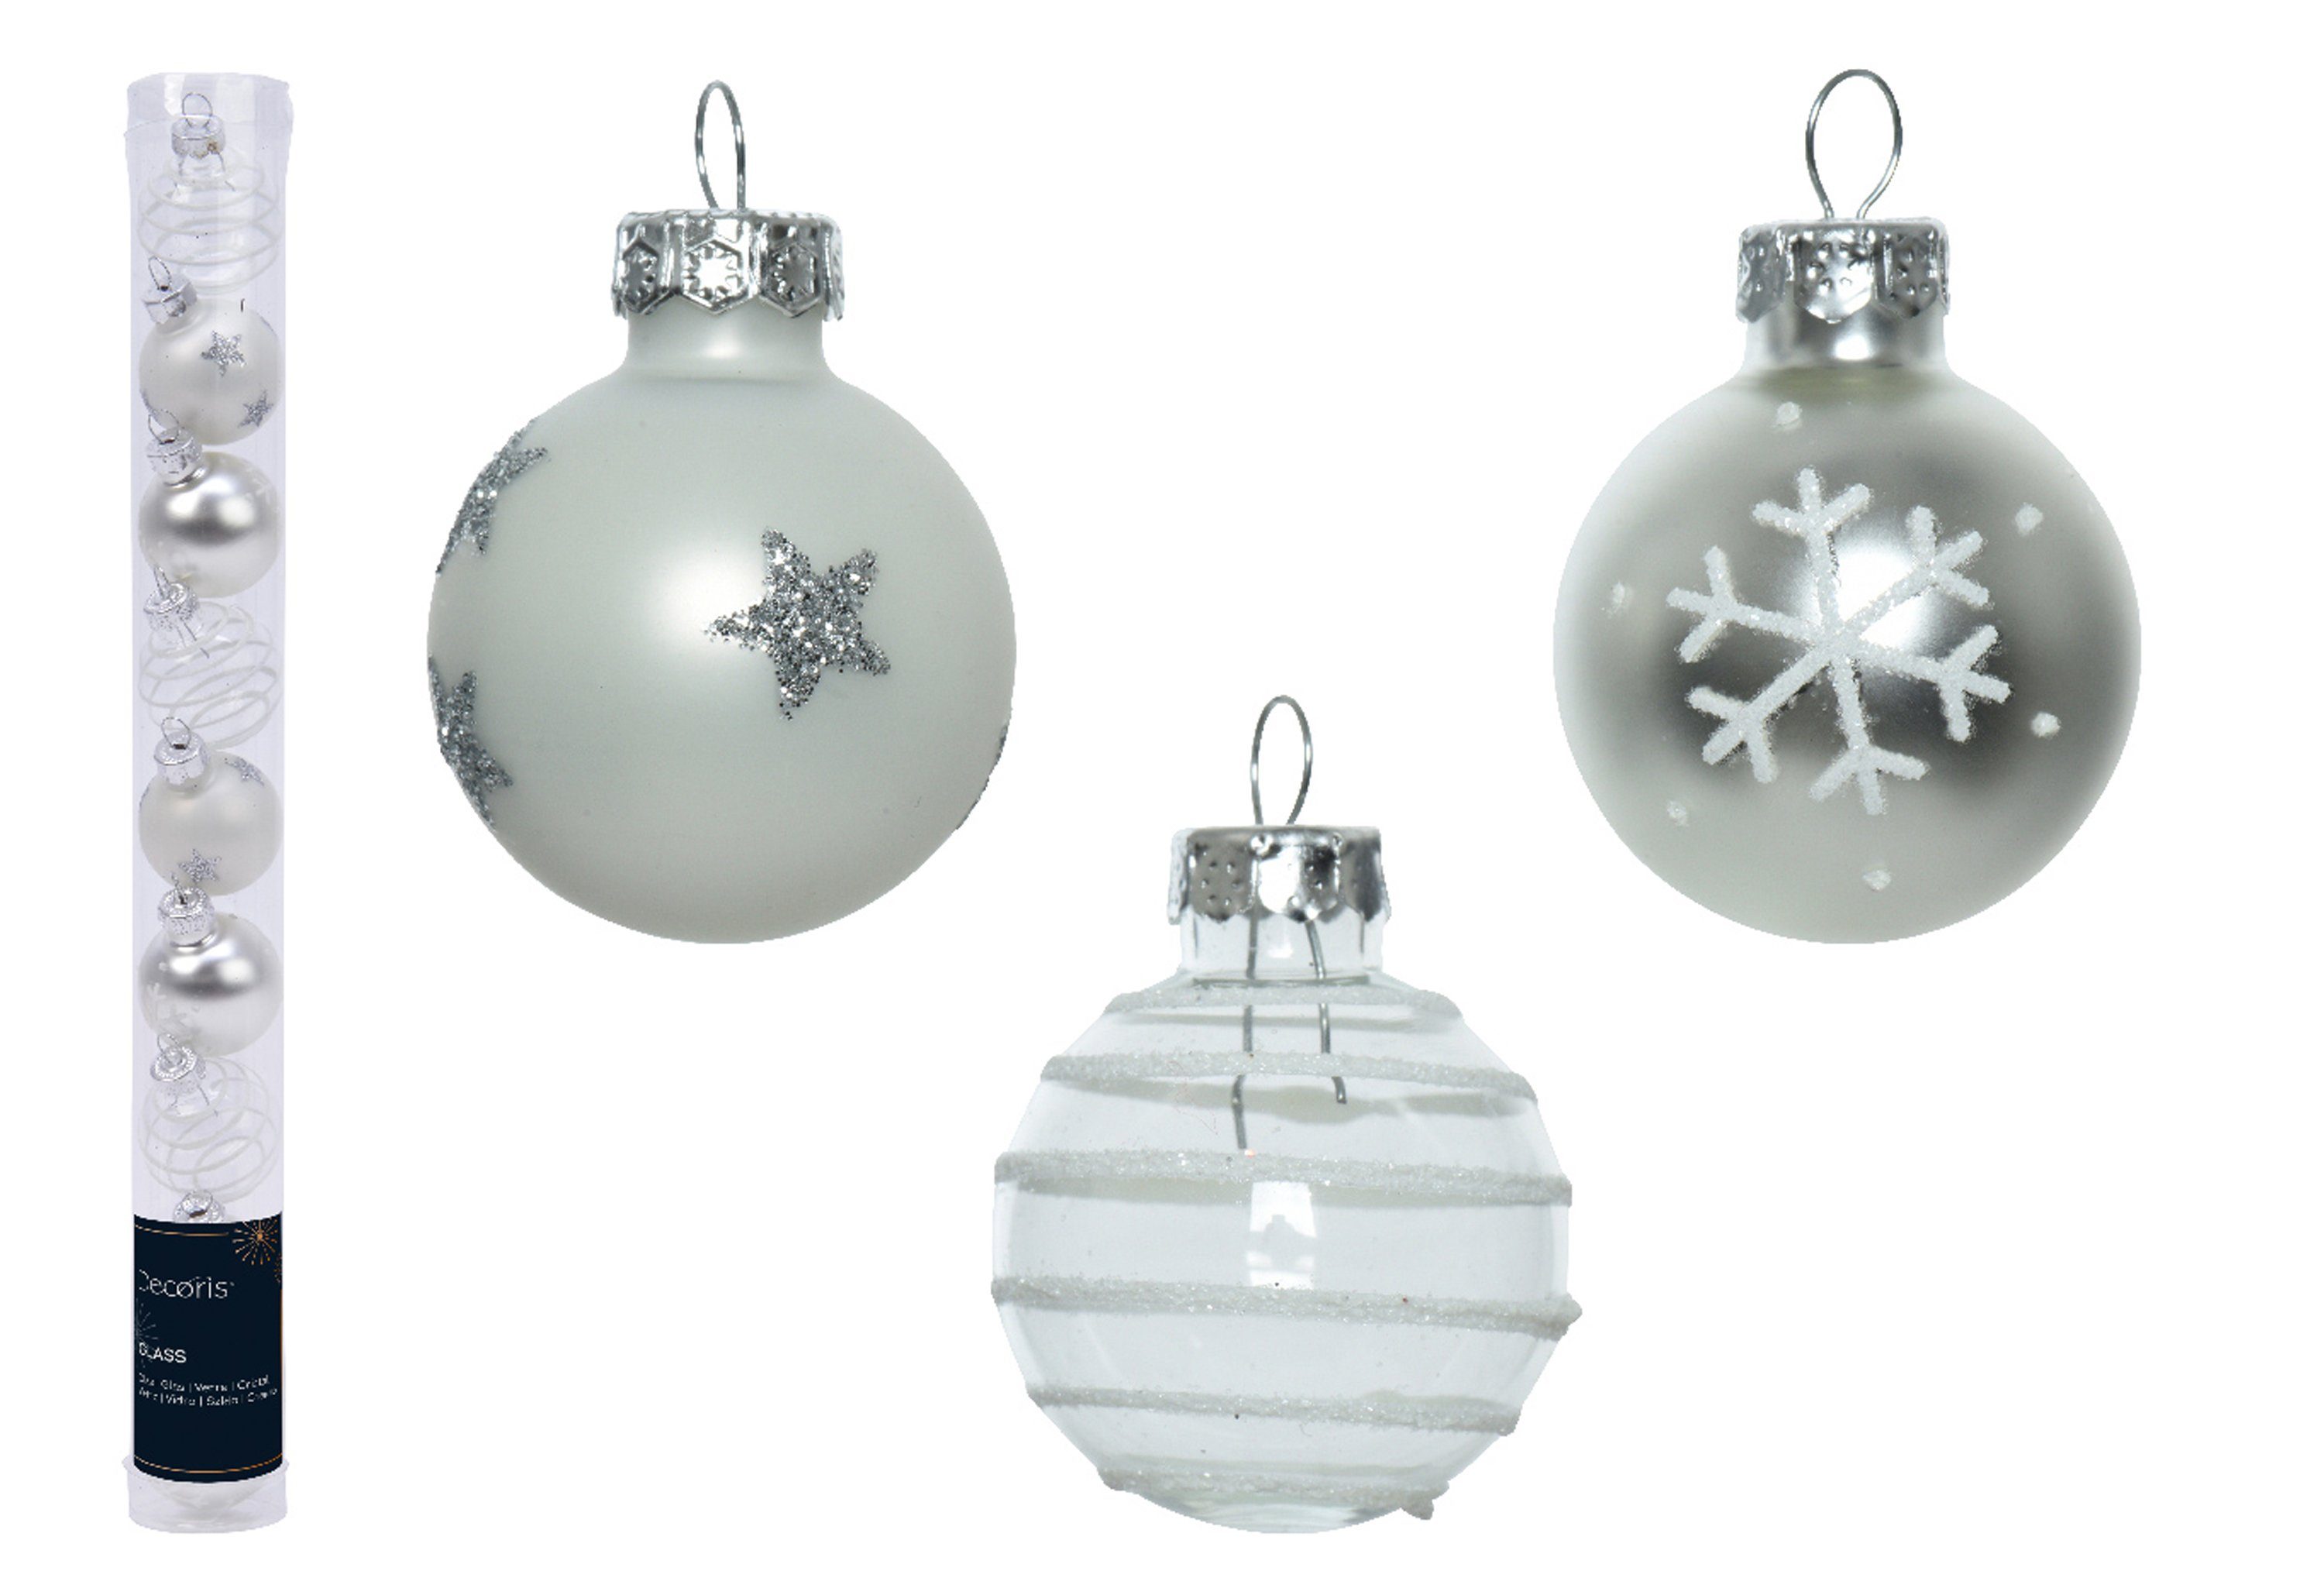 Decoris season decorations Weihnachtsbaumkugel, Weihnachtskugeln Glas mit Motiven 3cm silber Mix, 9er Set | Weihnachtskugeln